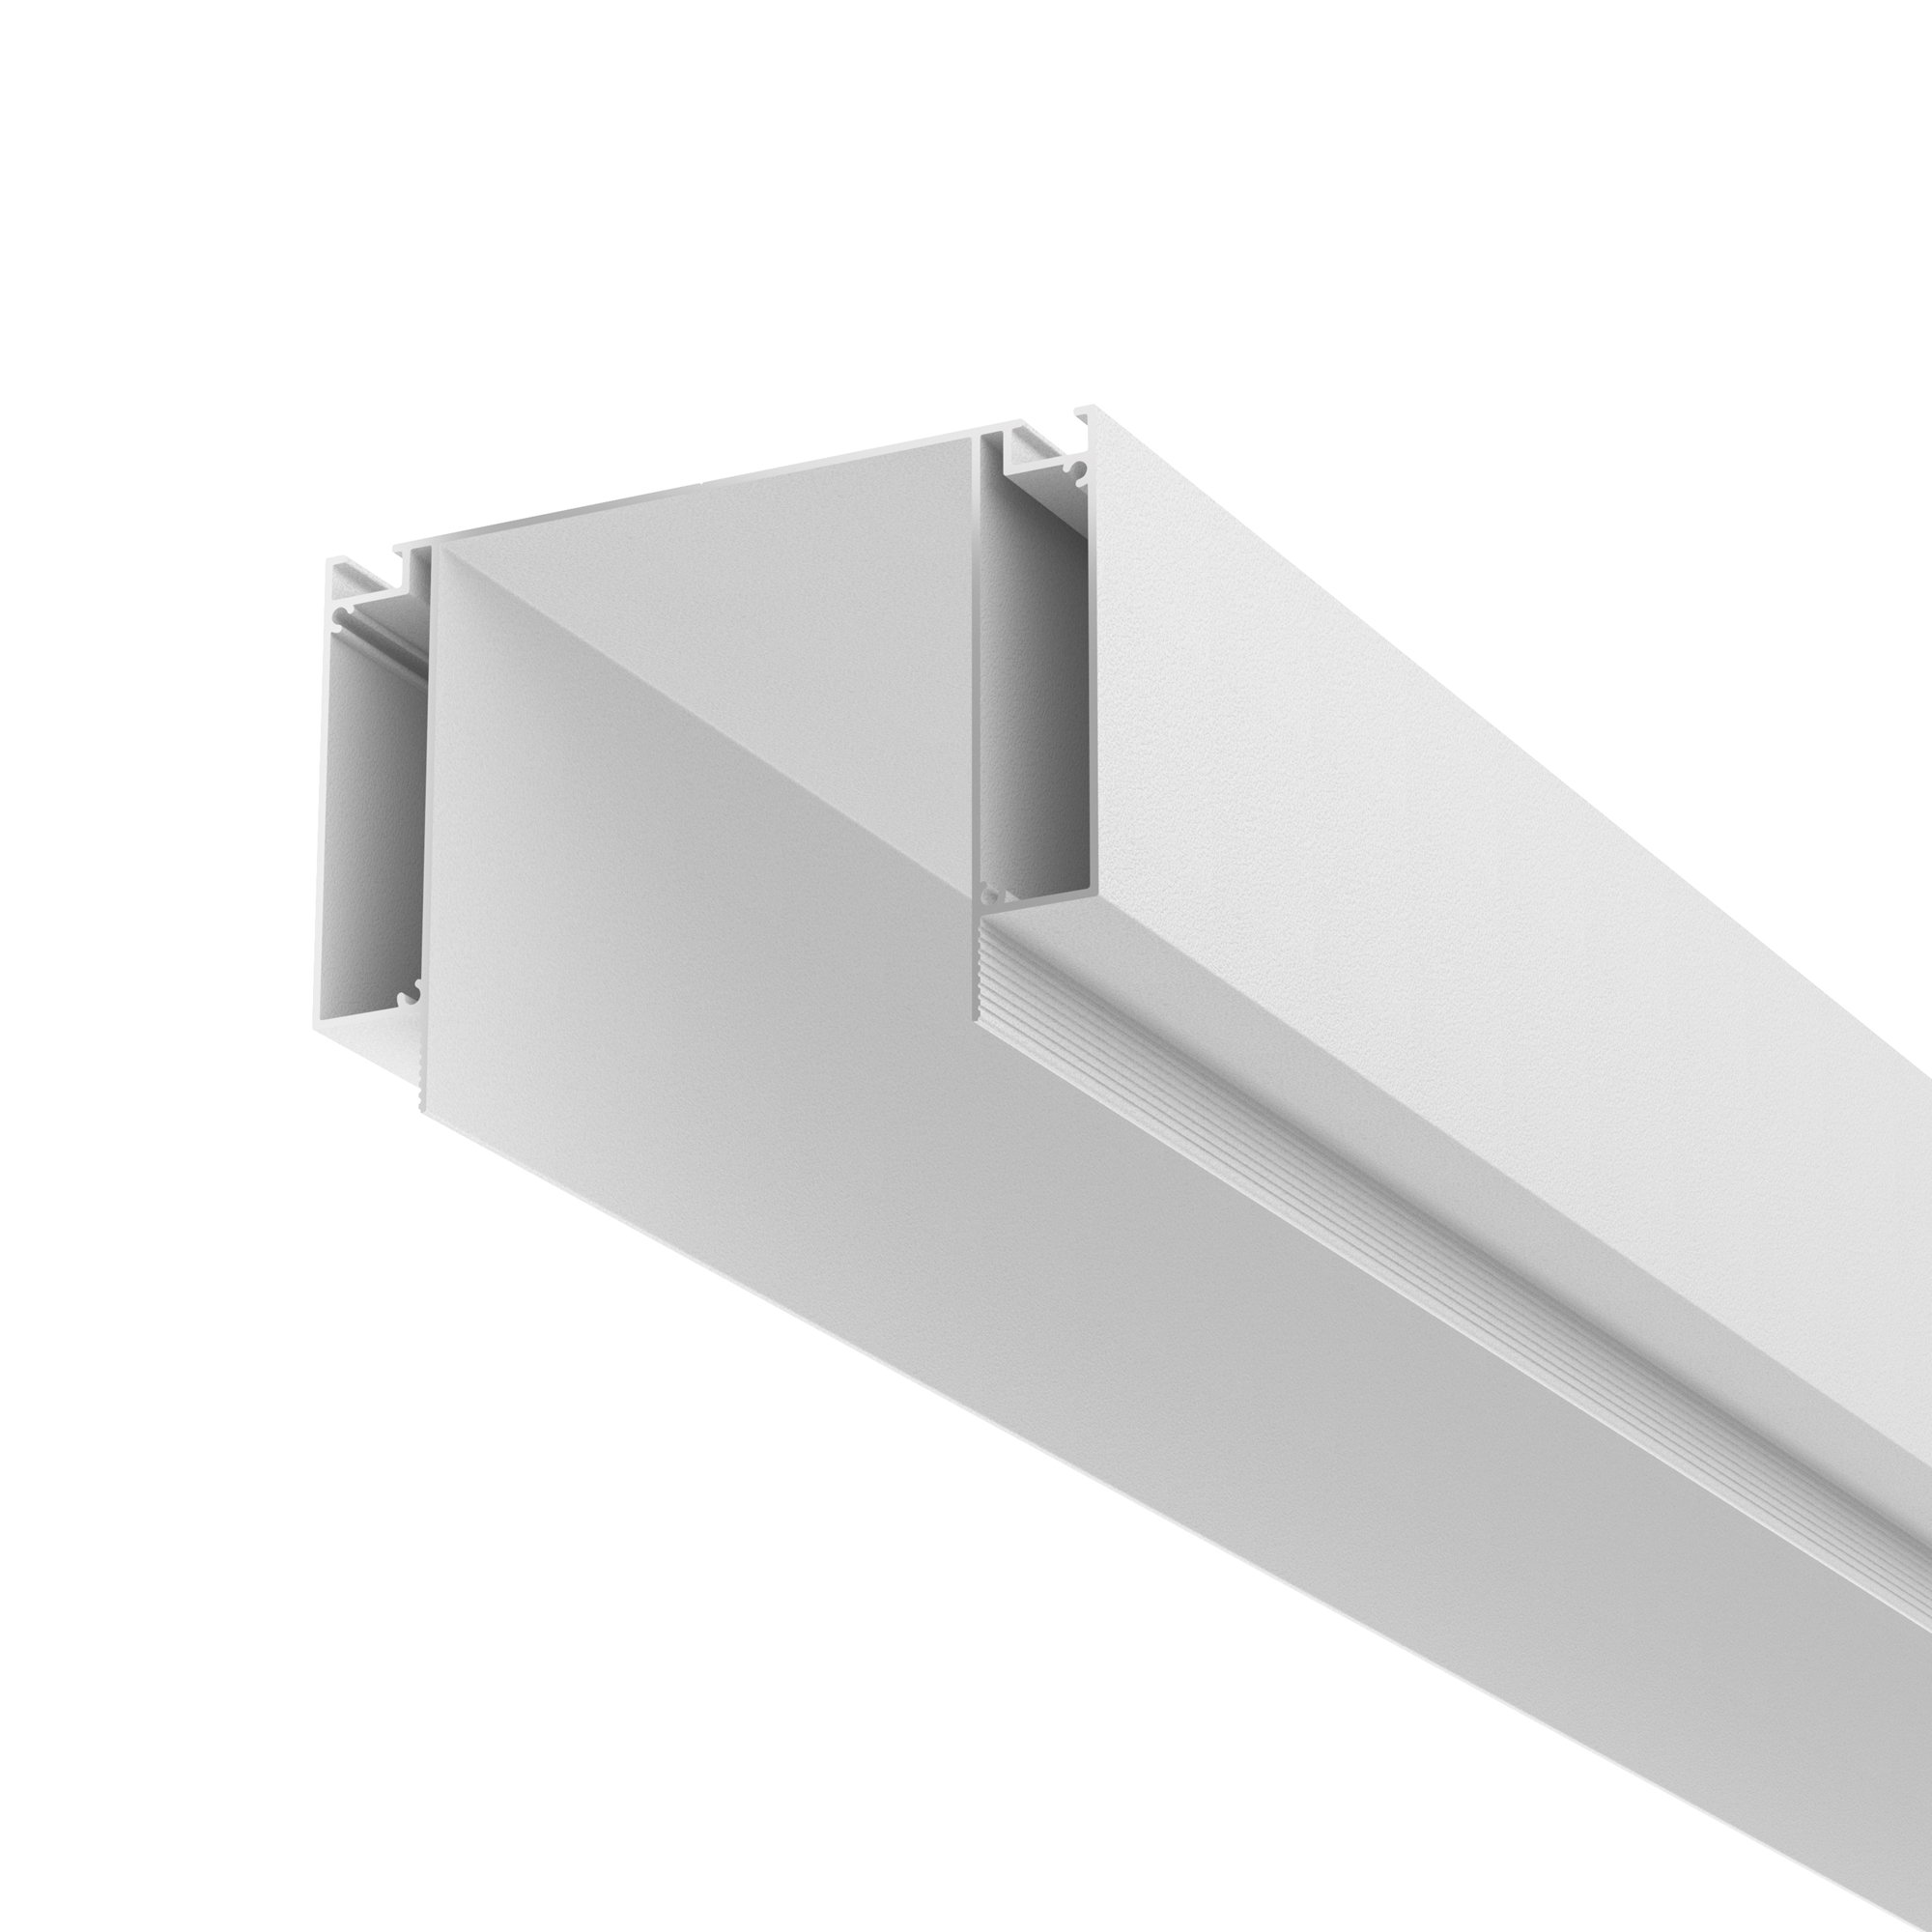 Алюминиевый профиль ниши скрытого монтажа для ГКЛ потолка, ALM-11681-PL-W-2M алюминиевый профиль для натяжного потолка 51x35 alm013s 2m